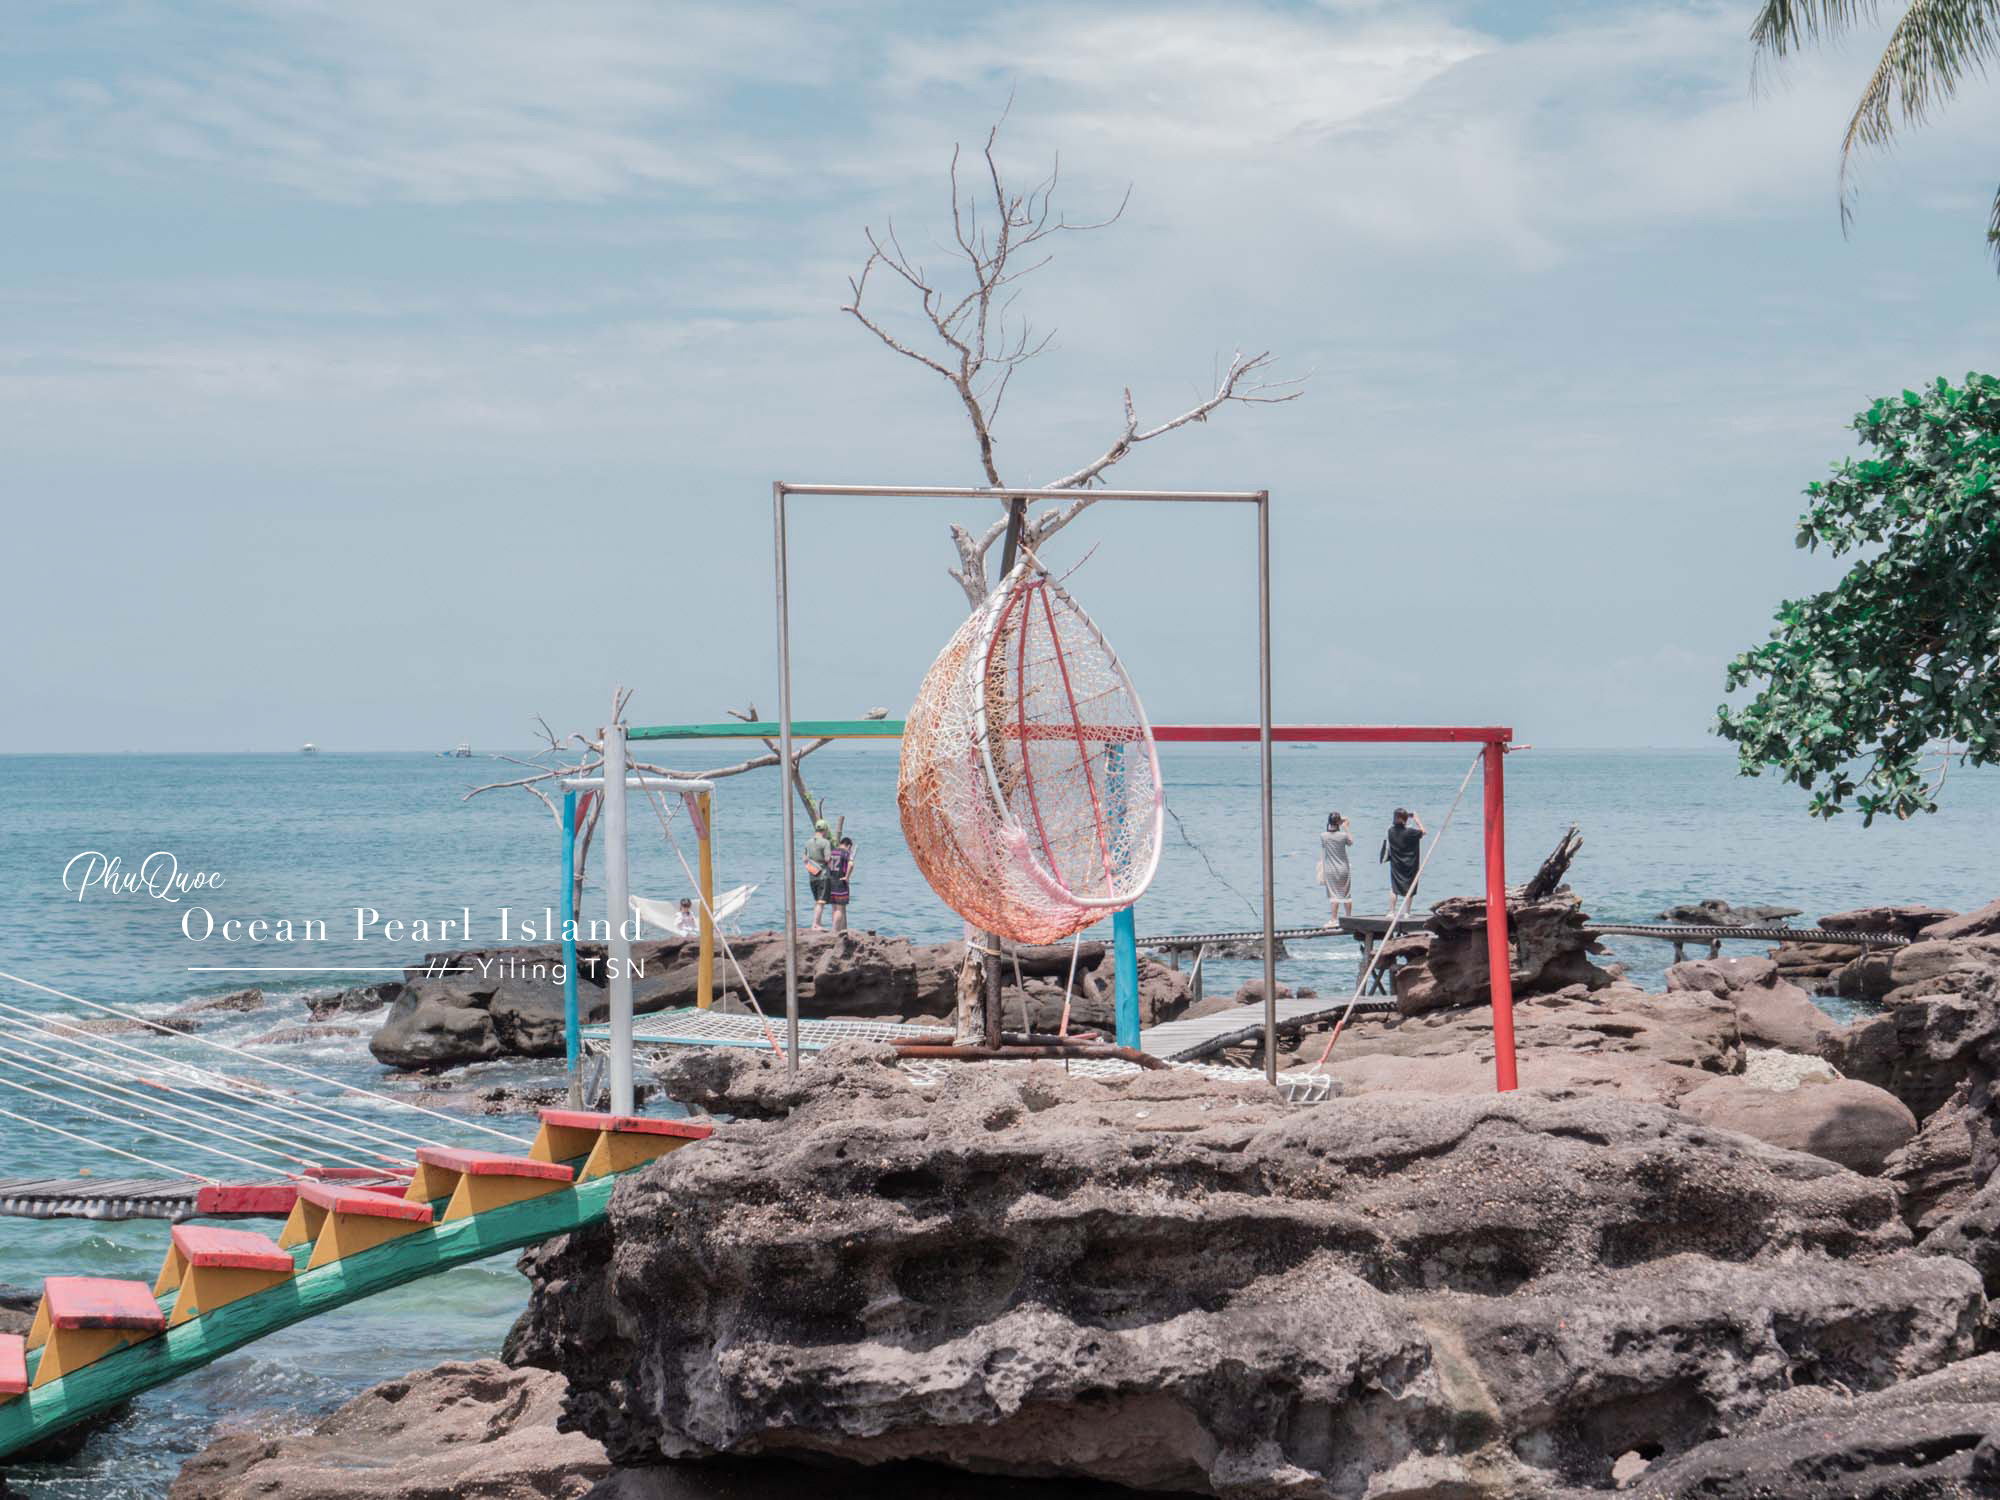 富國島南島跳島：傳統海釣、Hon Mong Tay南指甲島、Ocean Pearl Island珍珠島，體驗越南式海上網美拍照流程